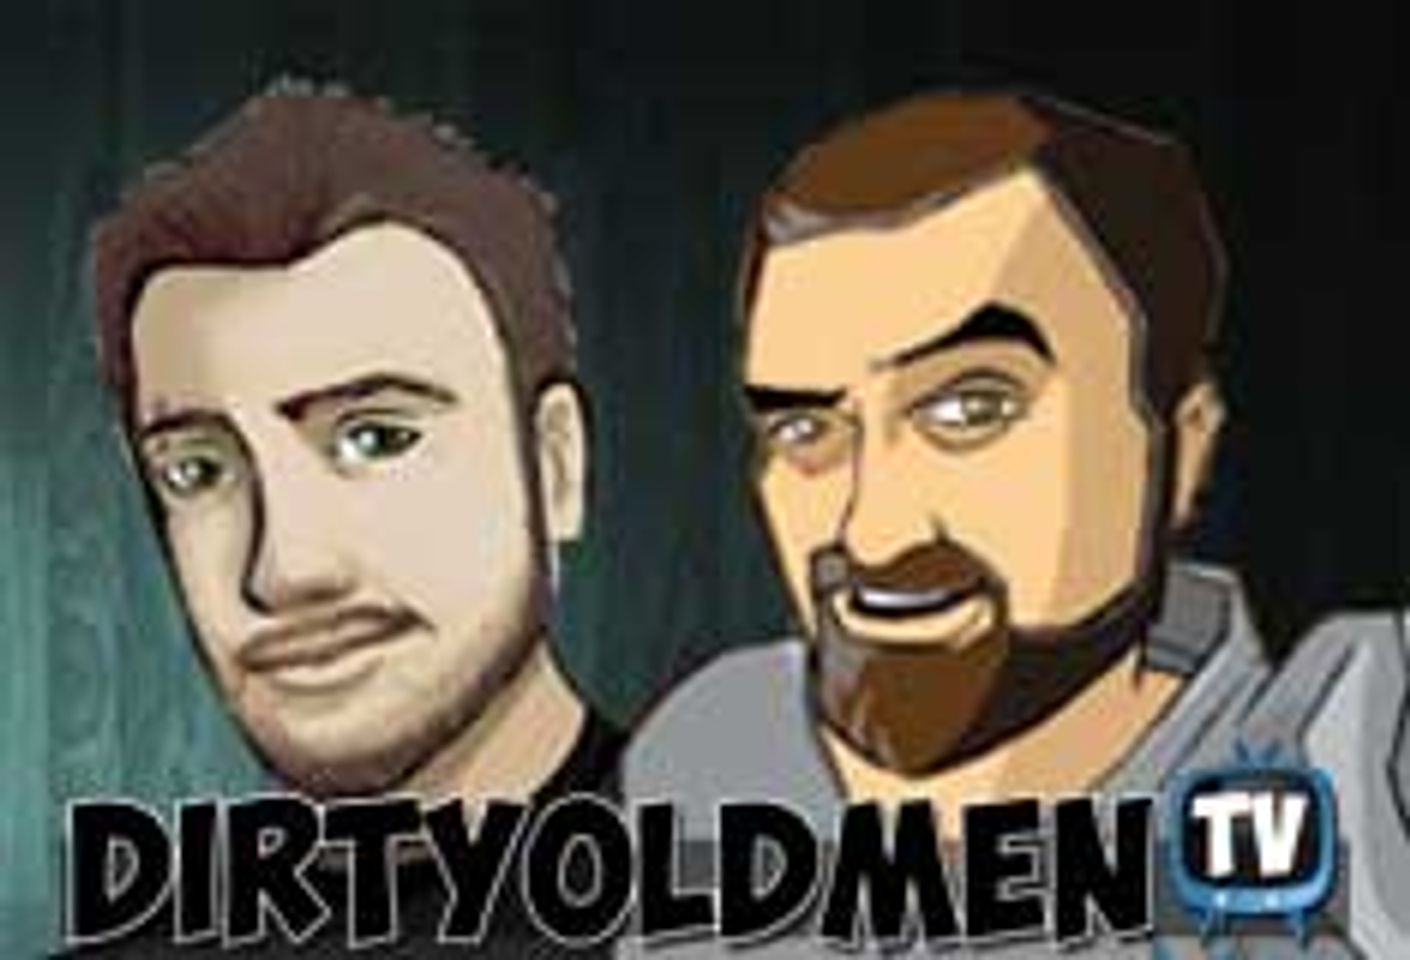 Next DirtyOldMen.tv Webcast Features Evil Angel GM, Christian Mann